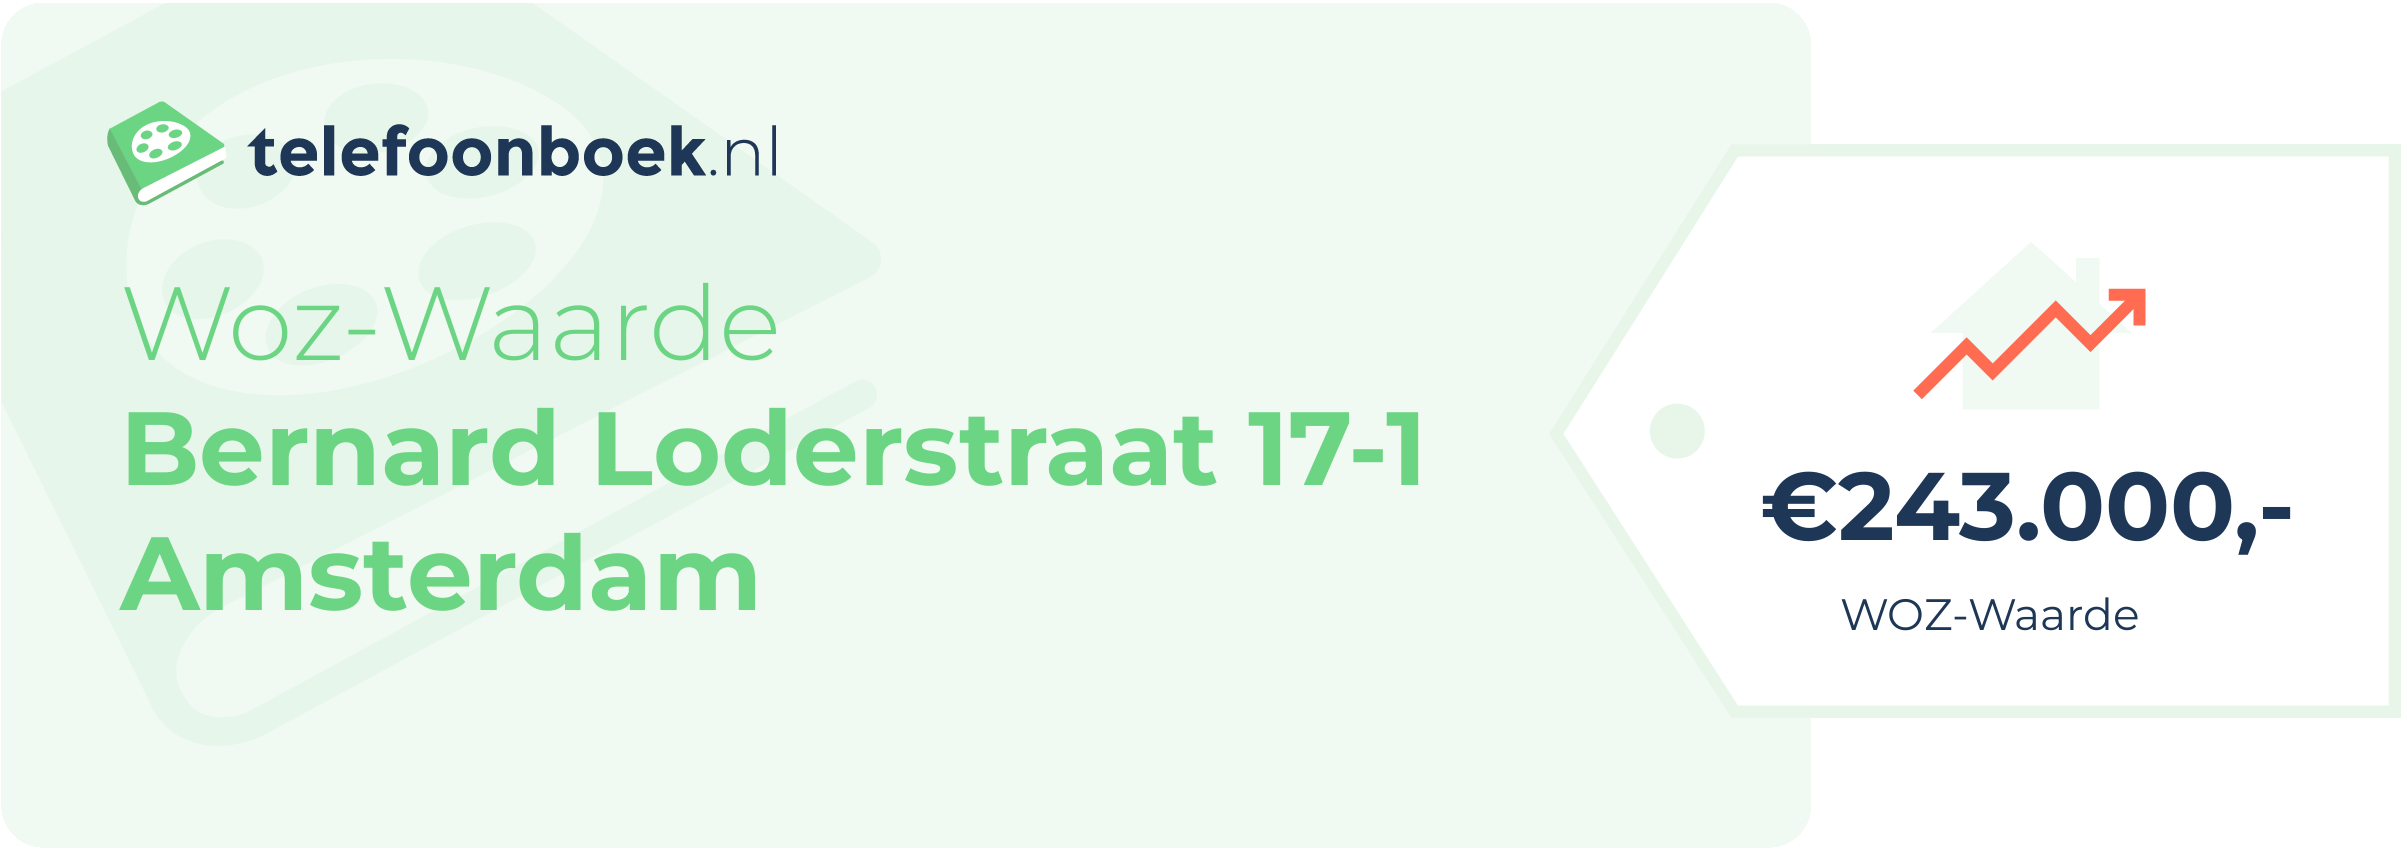 WOZ-waarde Bernard Loderstraat 17-1 Amsterdam